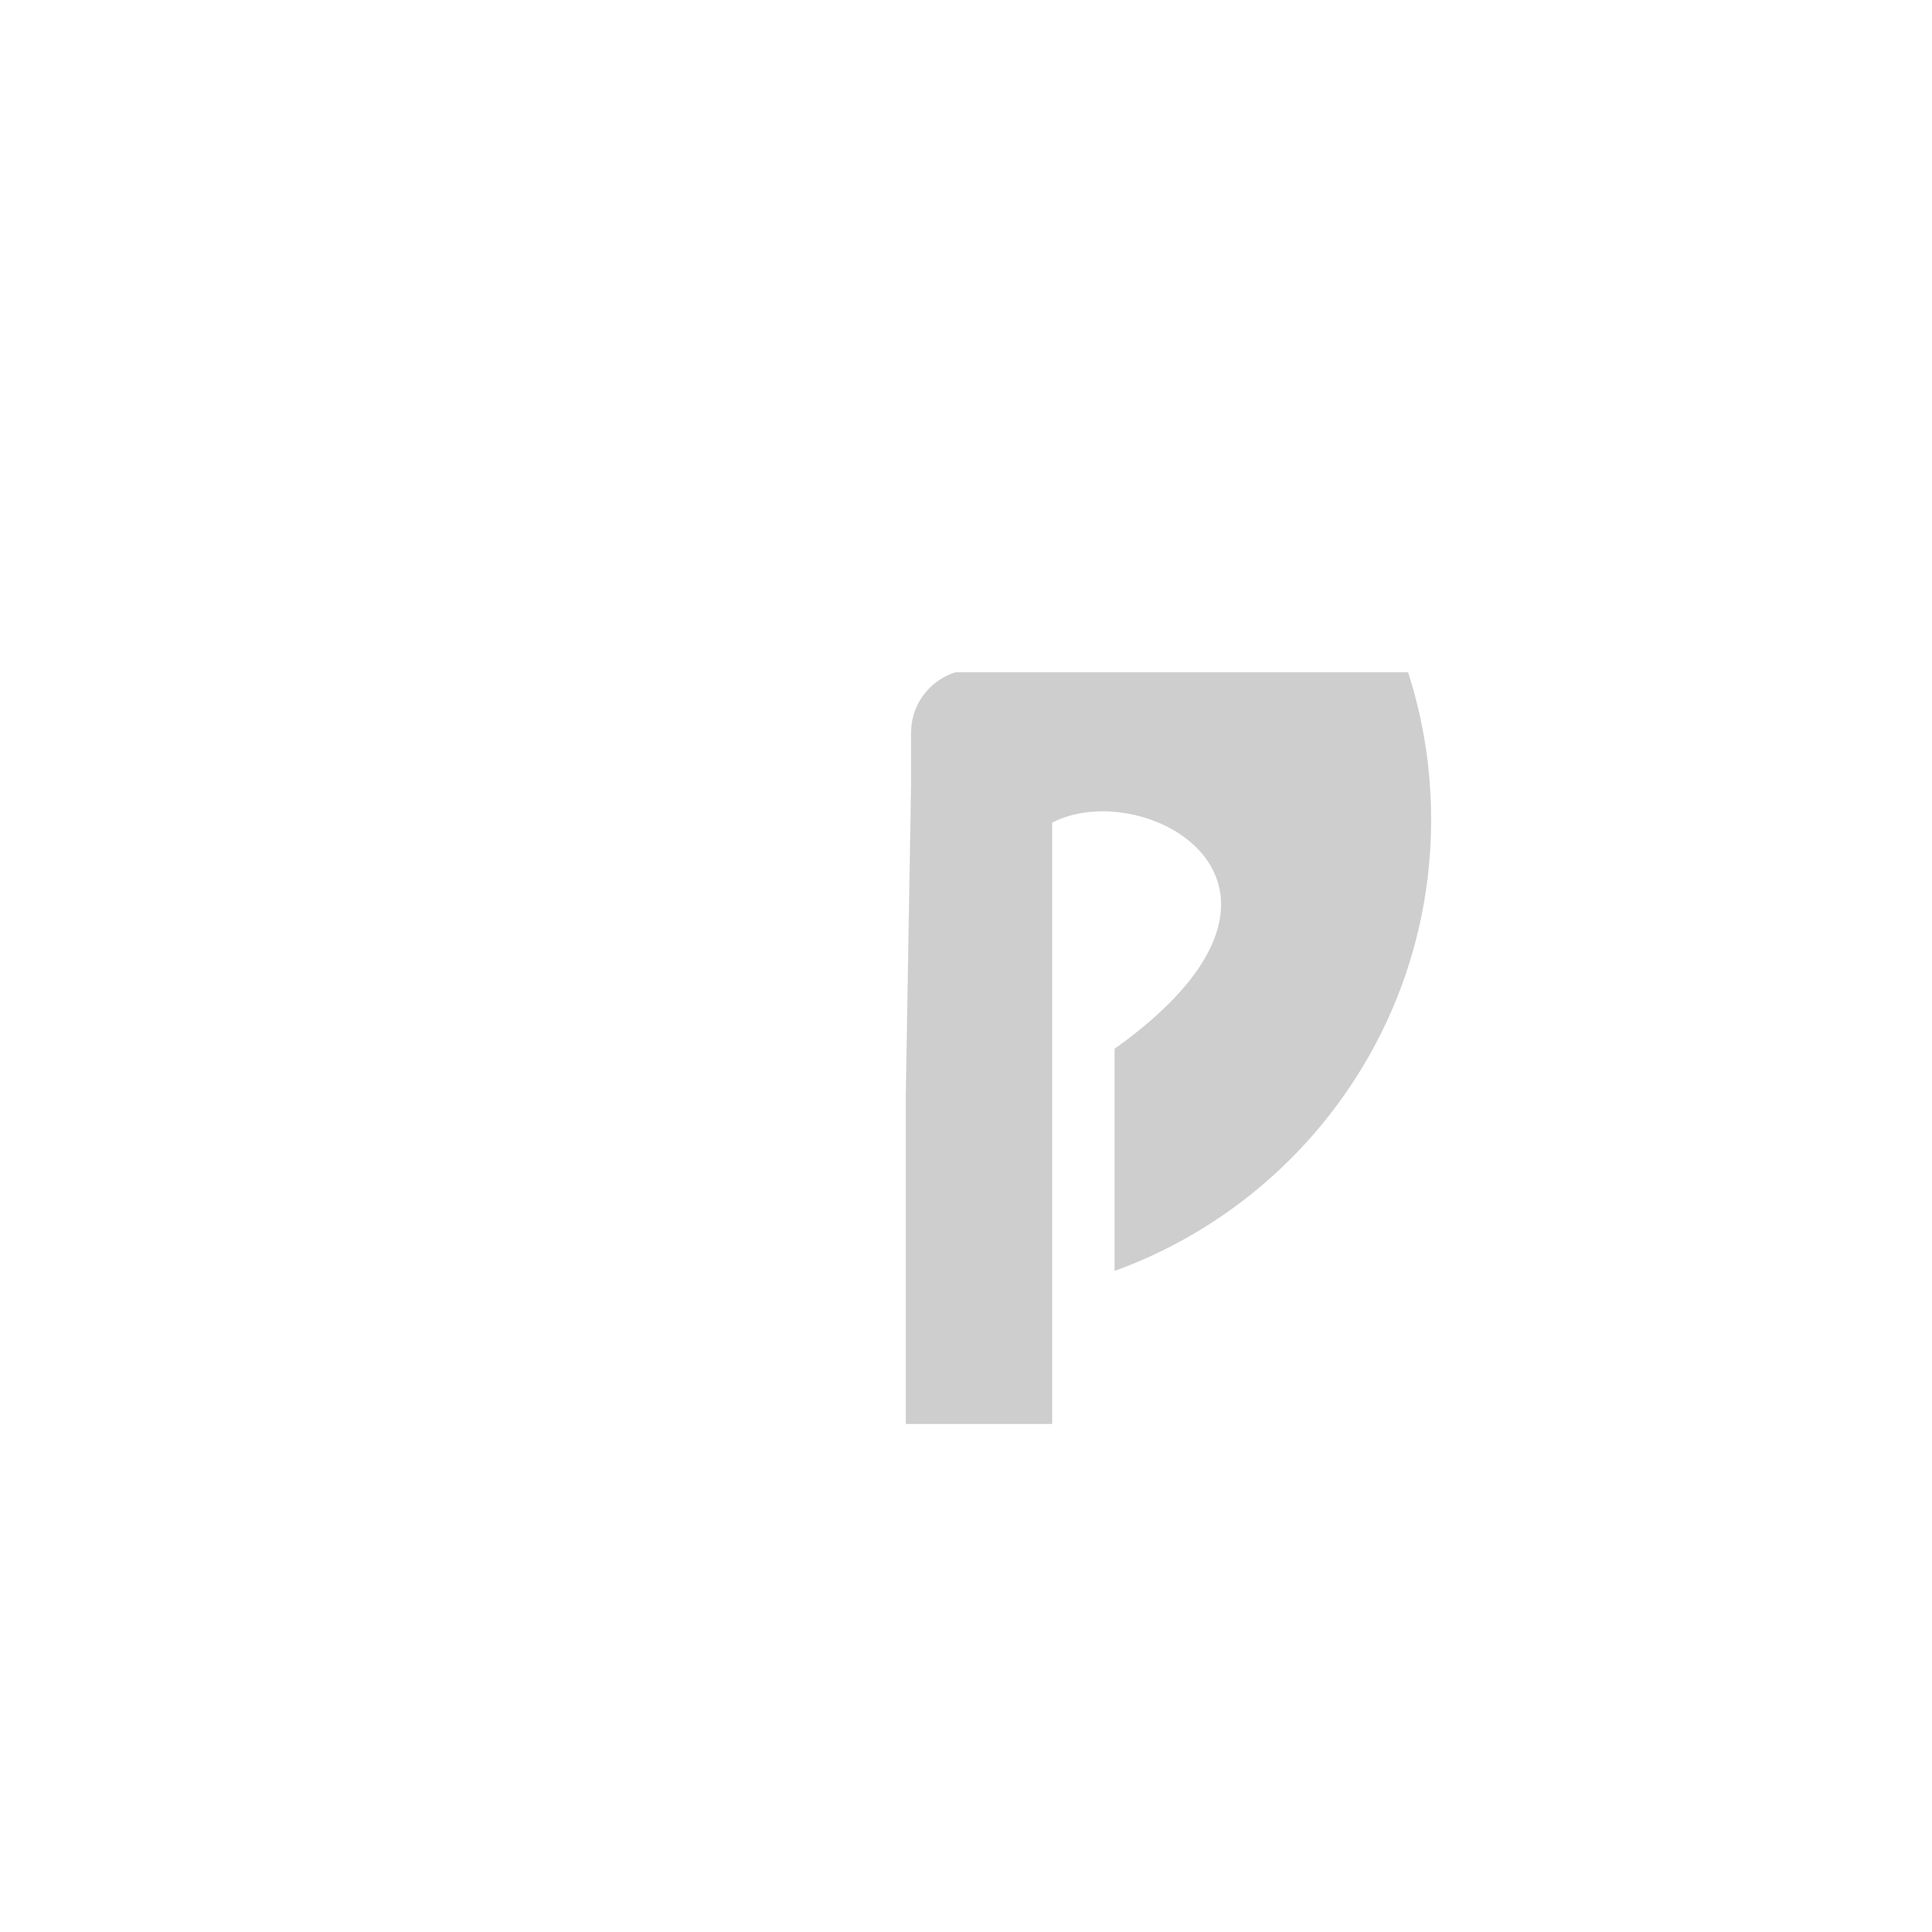 cp-logo-01